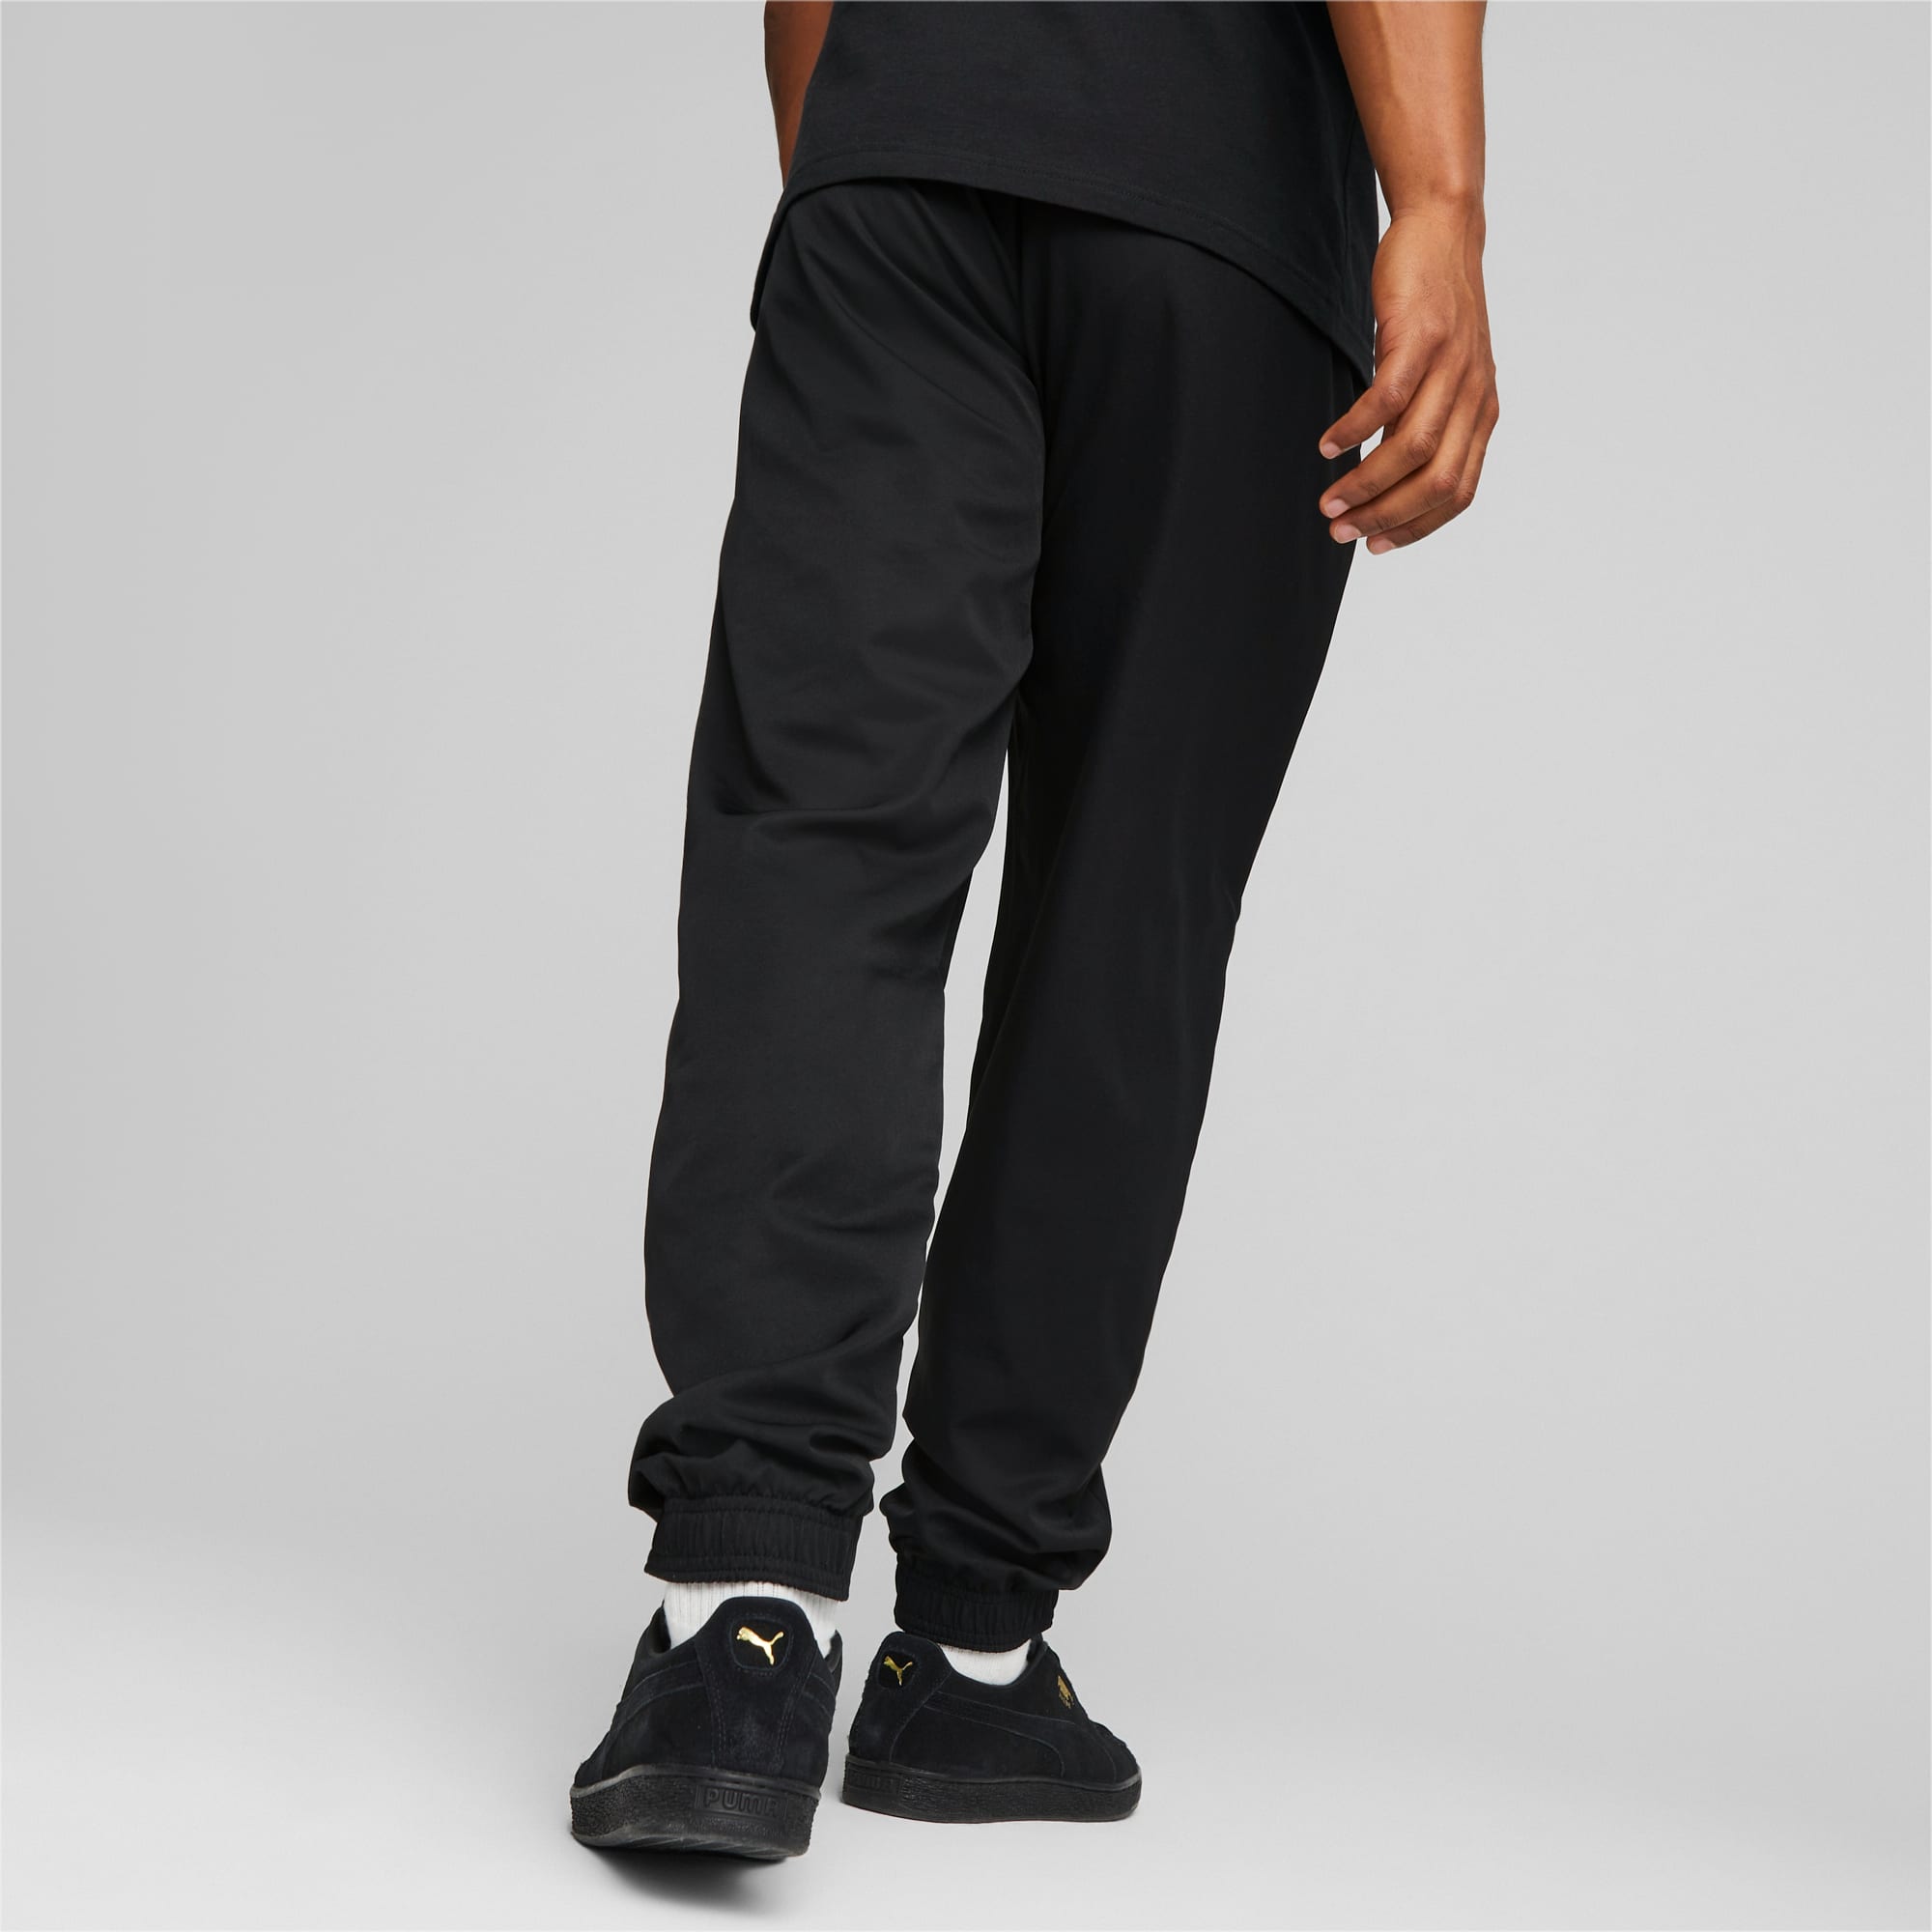 PUMA Active Woven Men's Pants, Black, Size XXS, Clothing